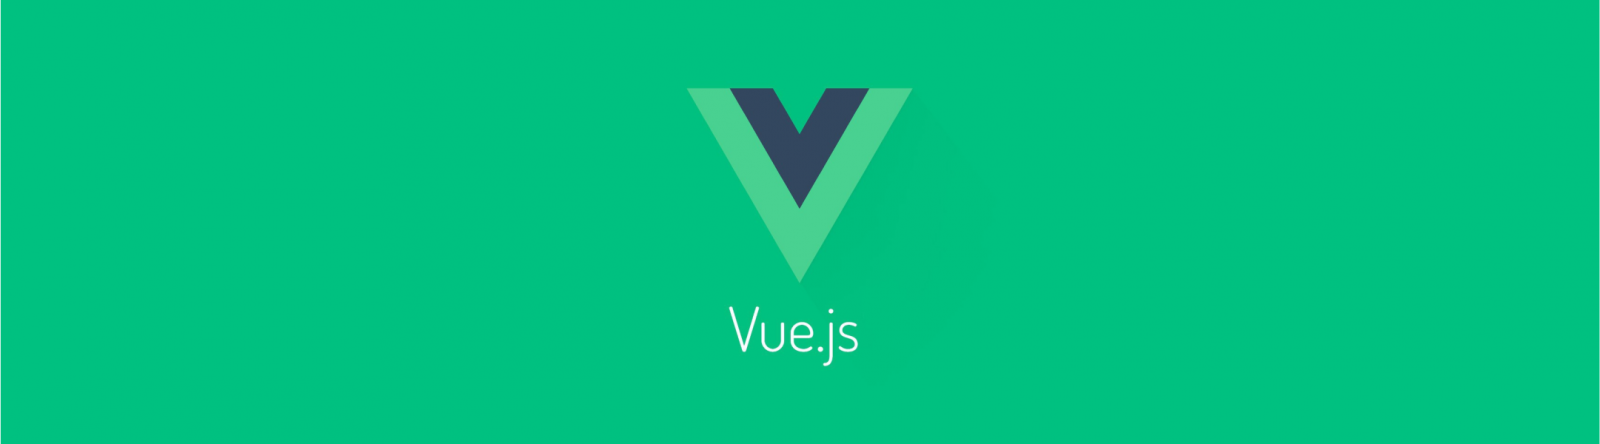 Услуги программирования на VueJS